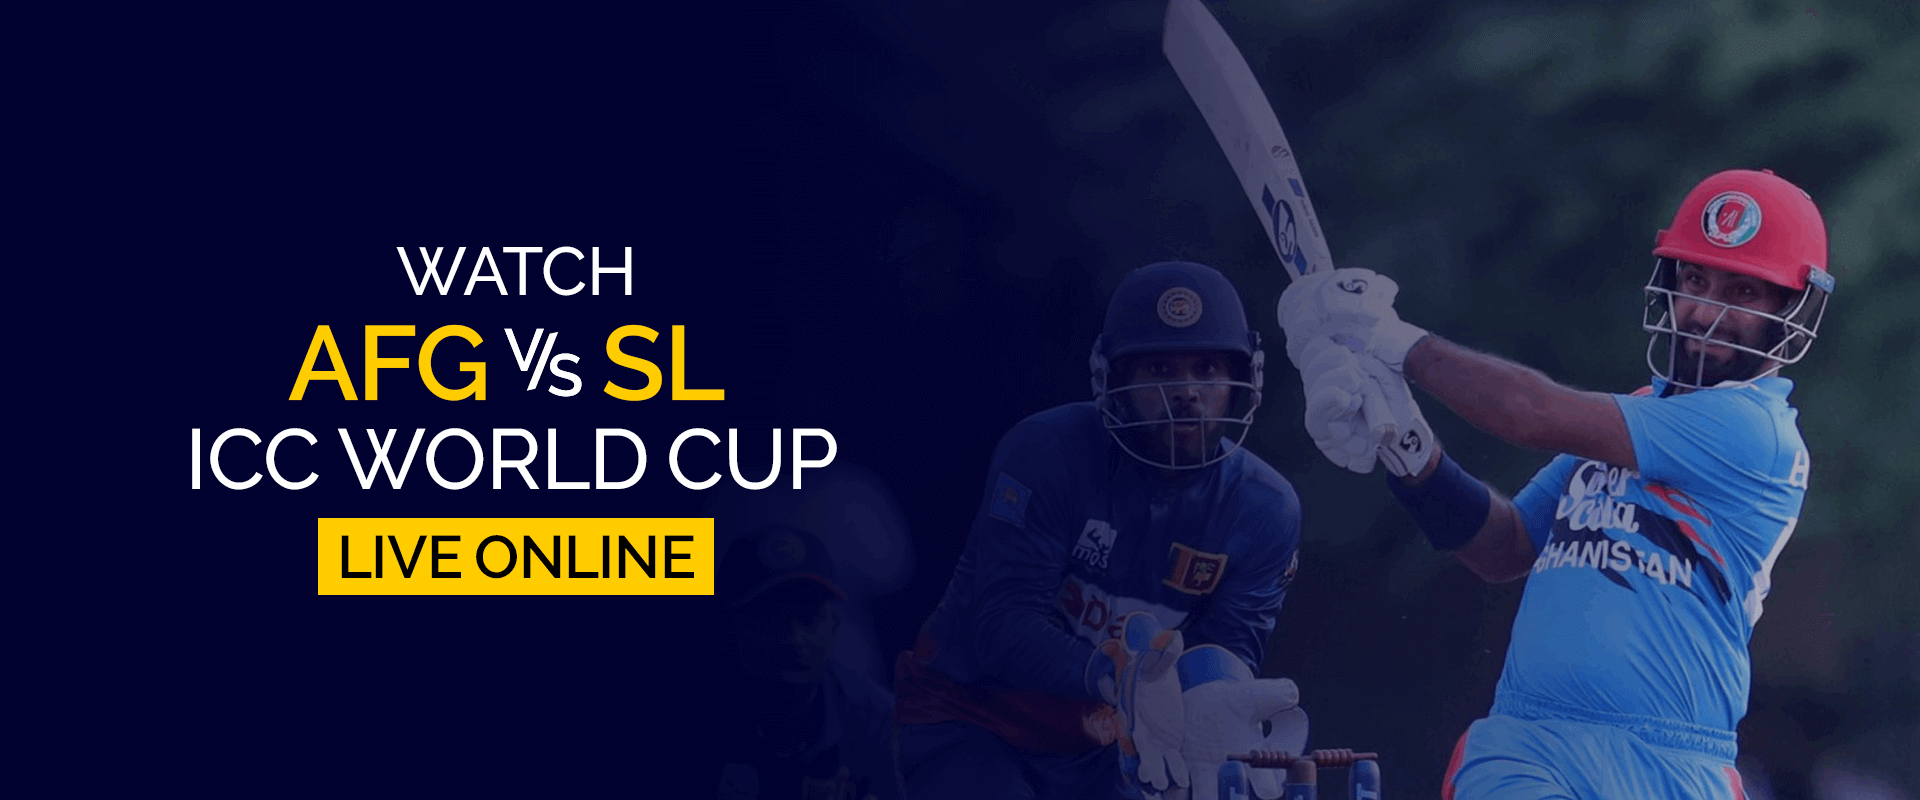 观看阿富汗 vs 斯里兰卡 ICC 世界杯在线直播